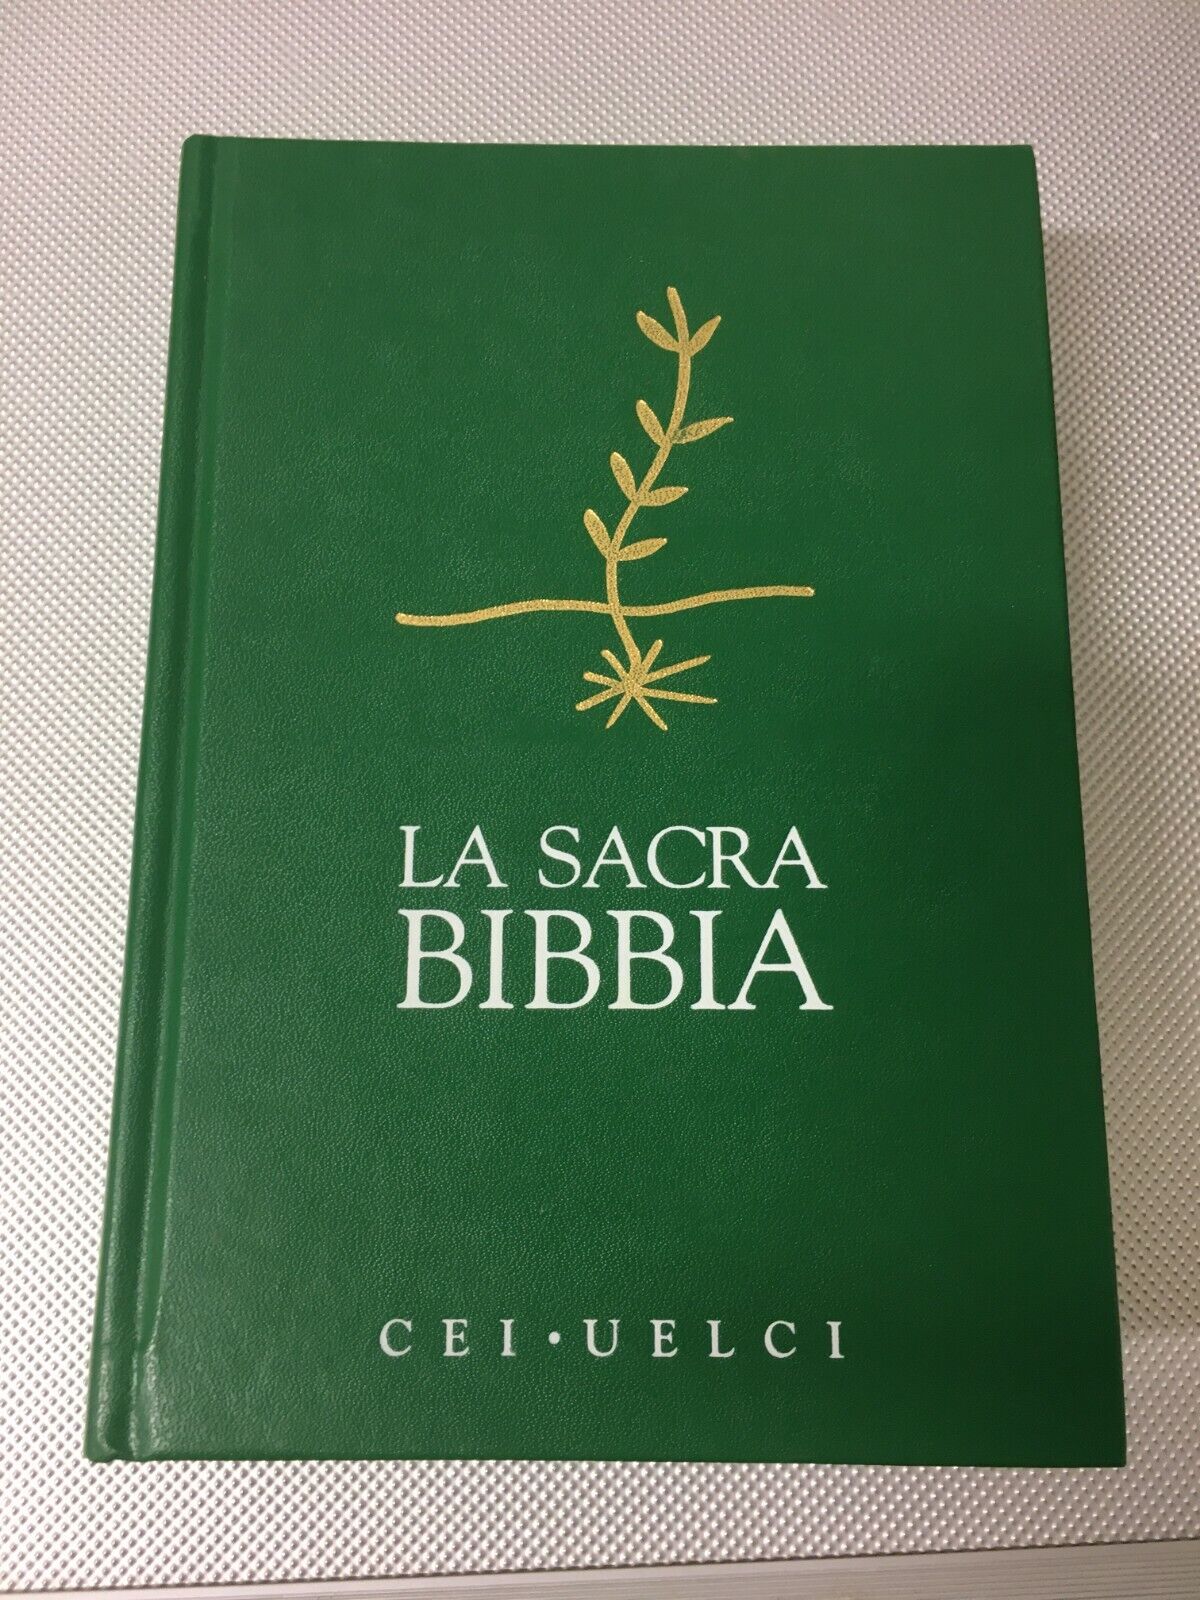 LIBRO LA SACRA BIBBIA CEI UELCI CONFERENZA EPISCOPALE ITALIANA